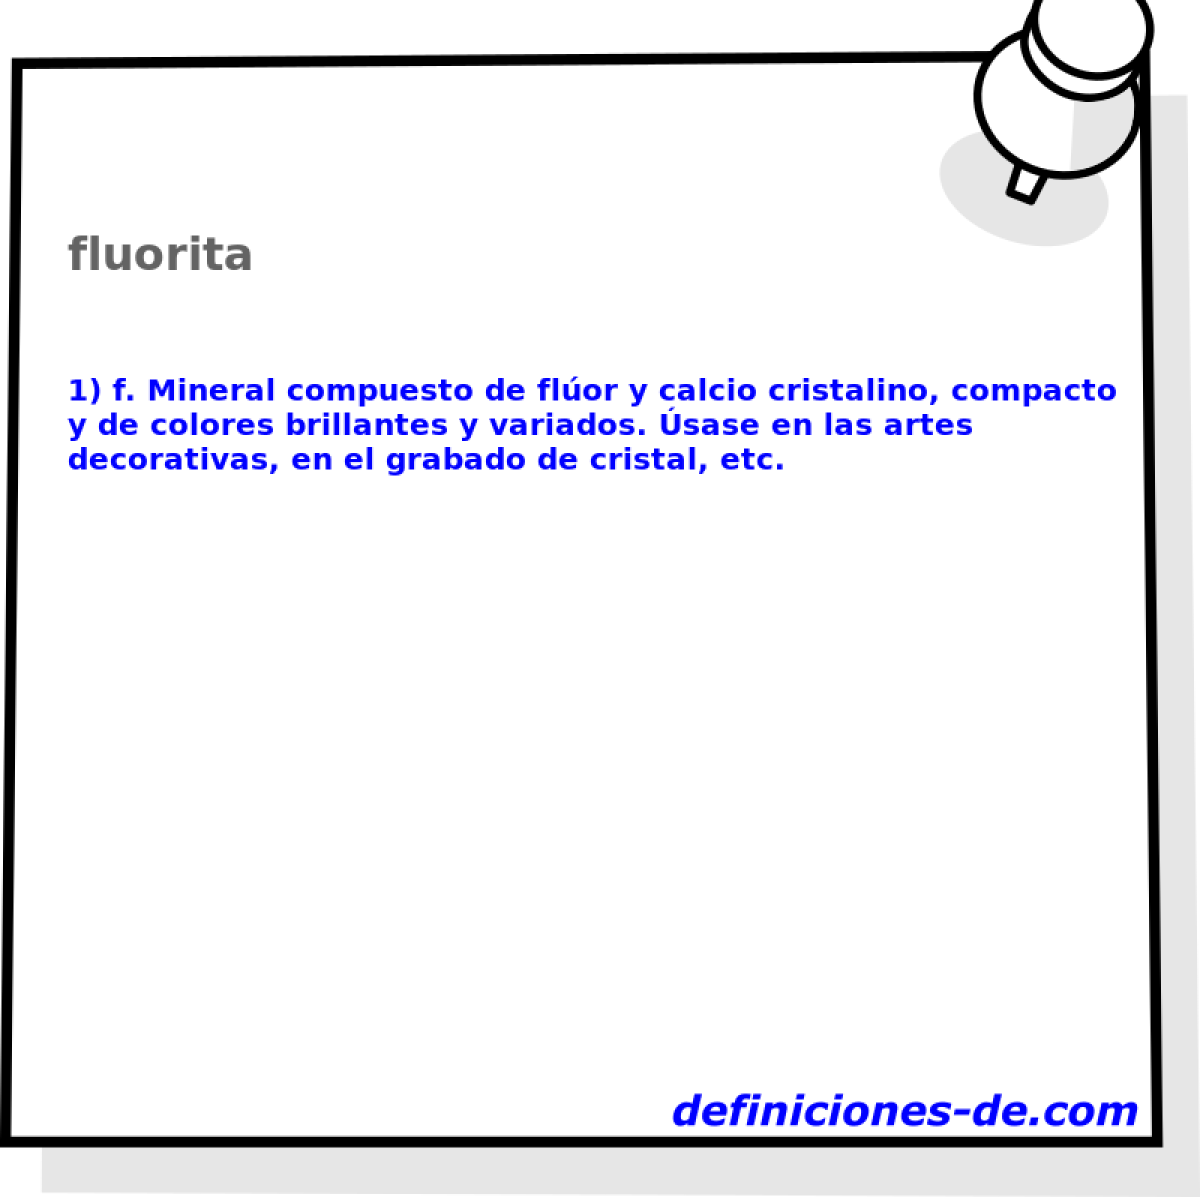 fluorita 